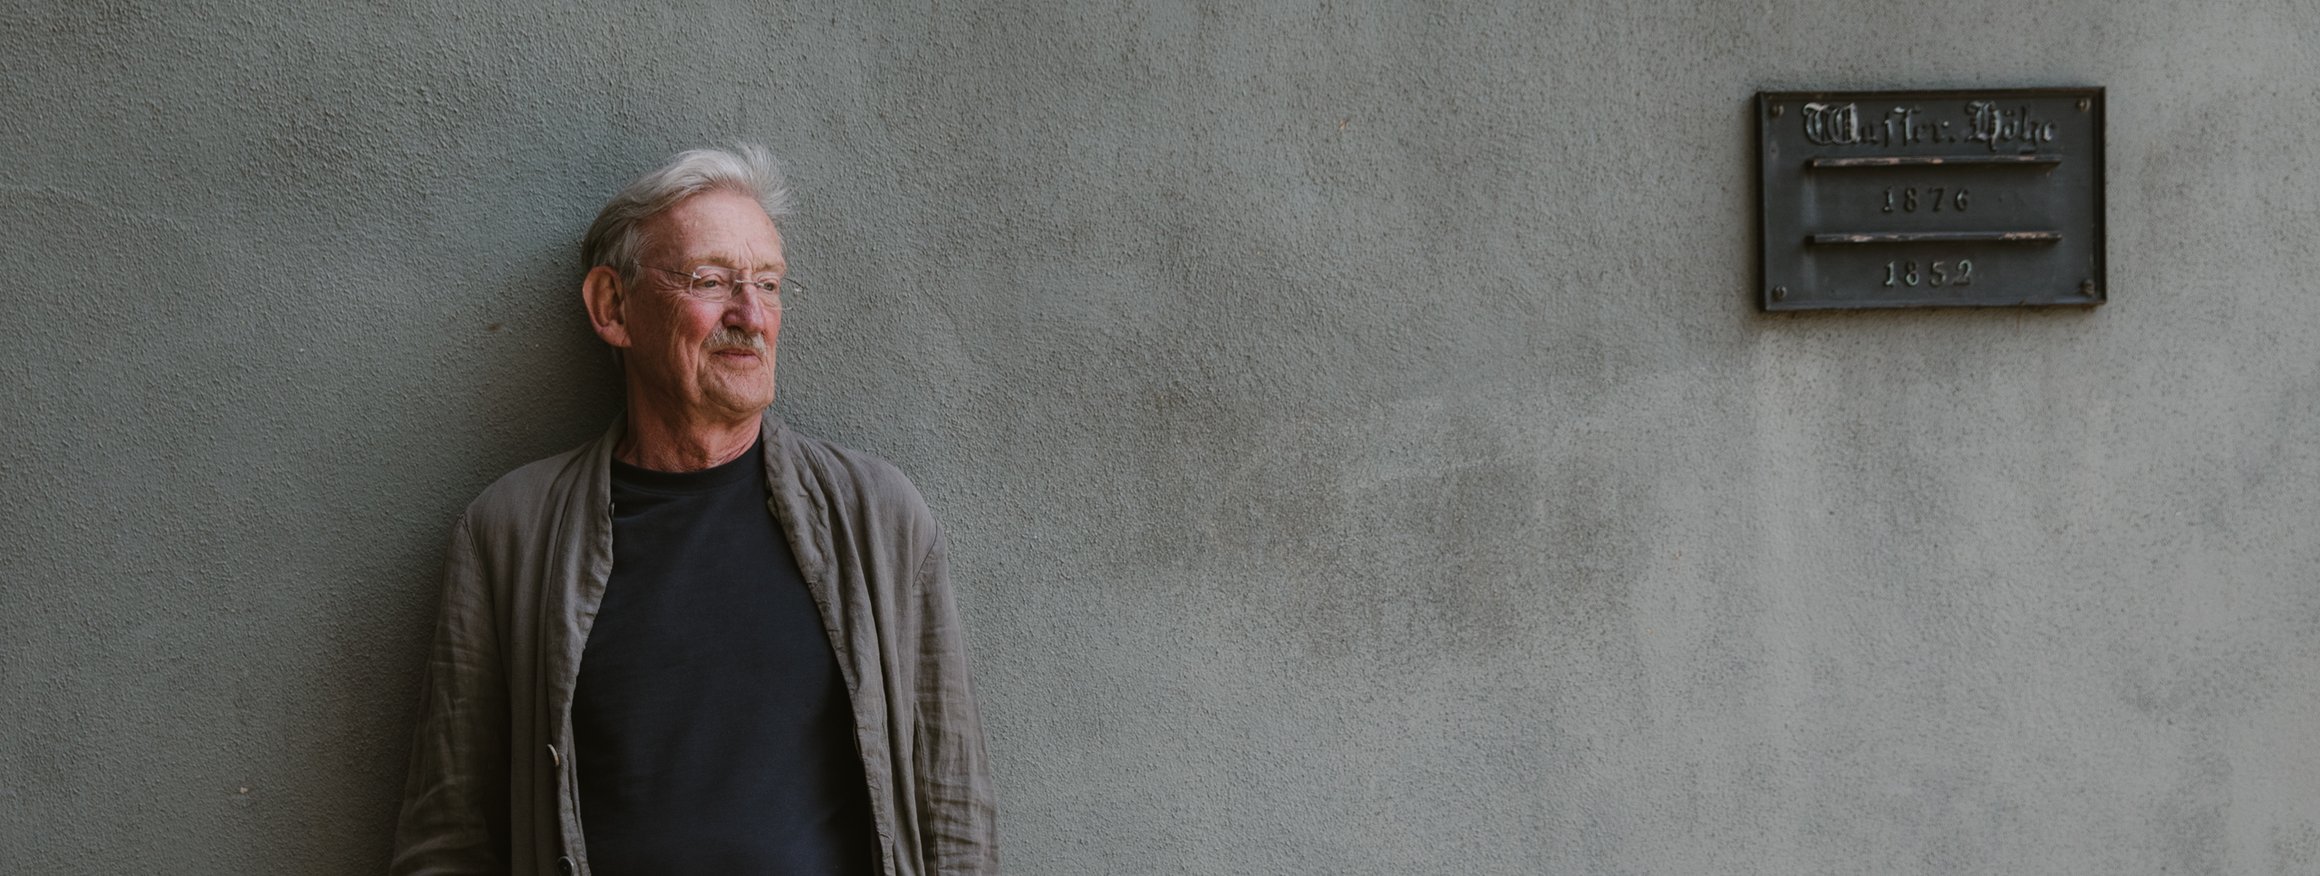 Der Schriftsteller, Christian Haller, lehnt an eine graue Wand mit einer Gedenktafel, die Hände in den Hosentaschen